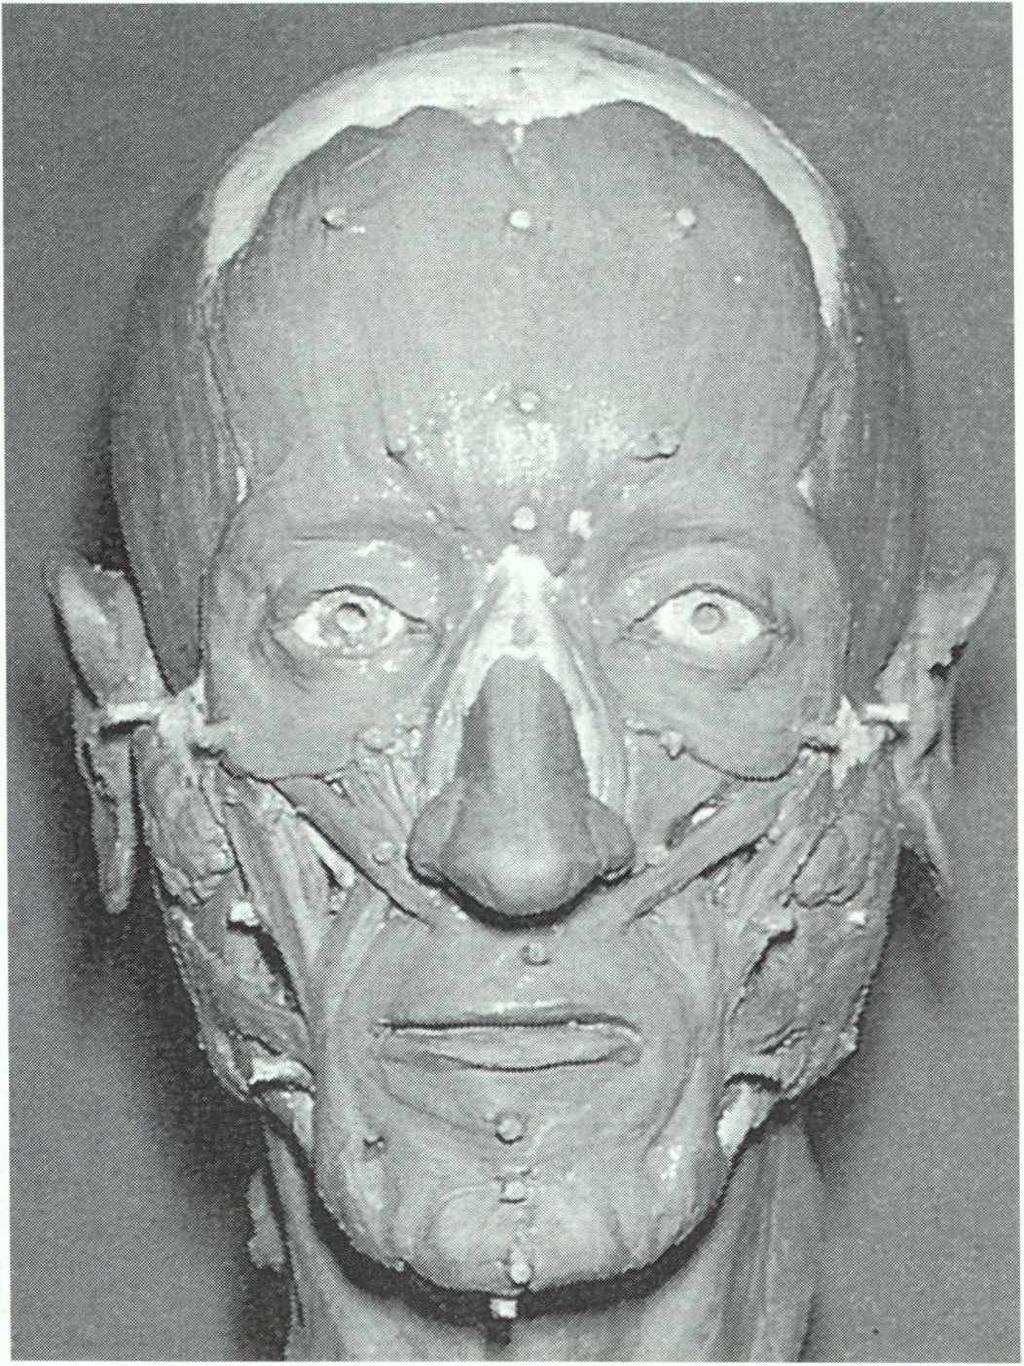 rekonstruierte Gesichter aus archäolo gischem Fundmaterial eine hohe Wahrscheinlichkeit besteht, das antike Aussehen wiederzugewinnen.